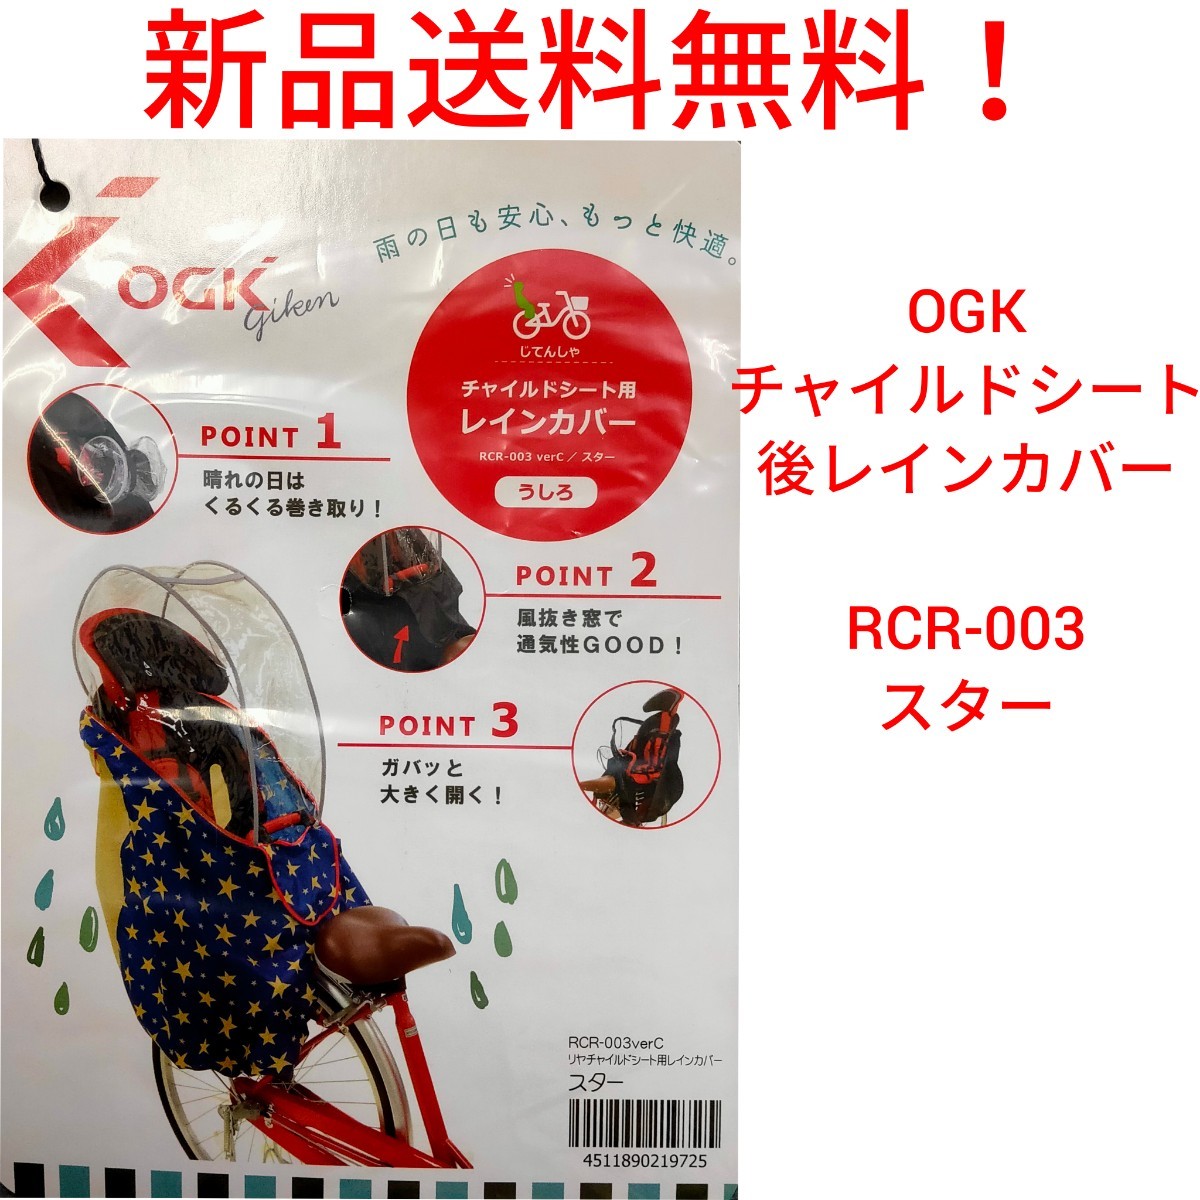 【新品送料無料】 後 チャイルドシート レインカバー OGK RCR-003 Ver.C ハレーロ・キッズ 自転車 同乗器 雨 風 ホコリ 子供 オージーケー_画像1